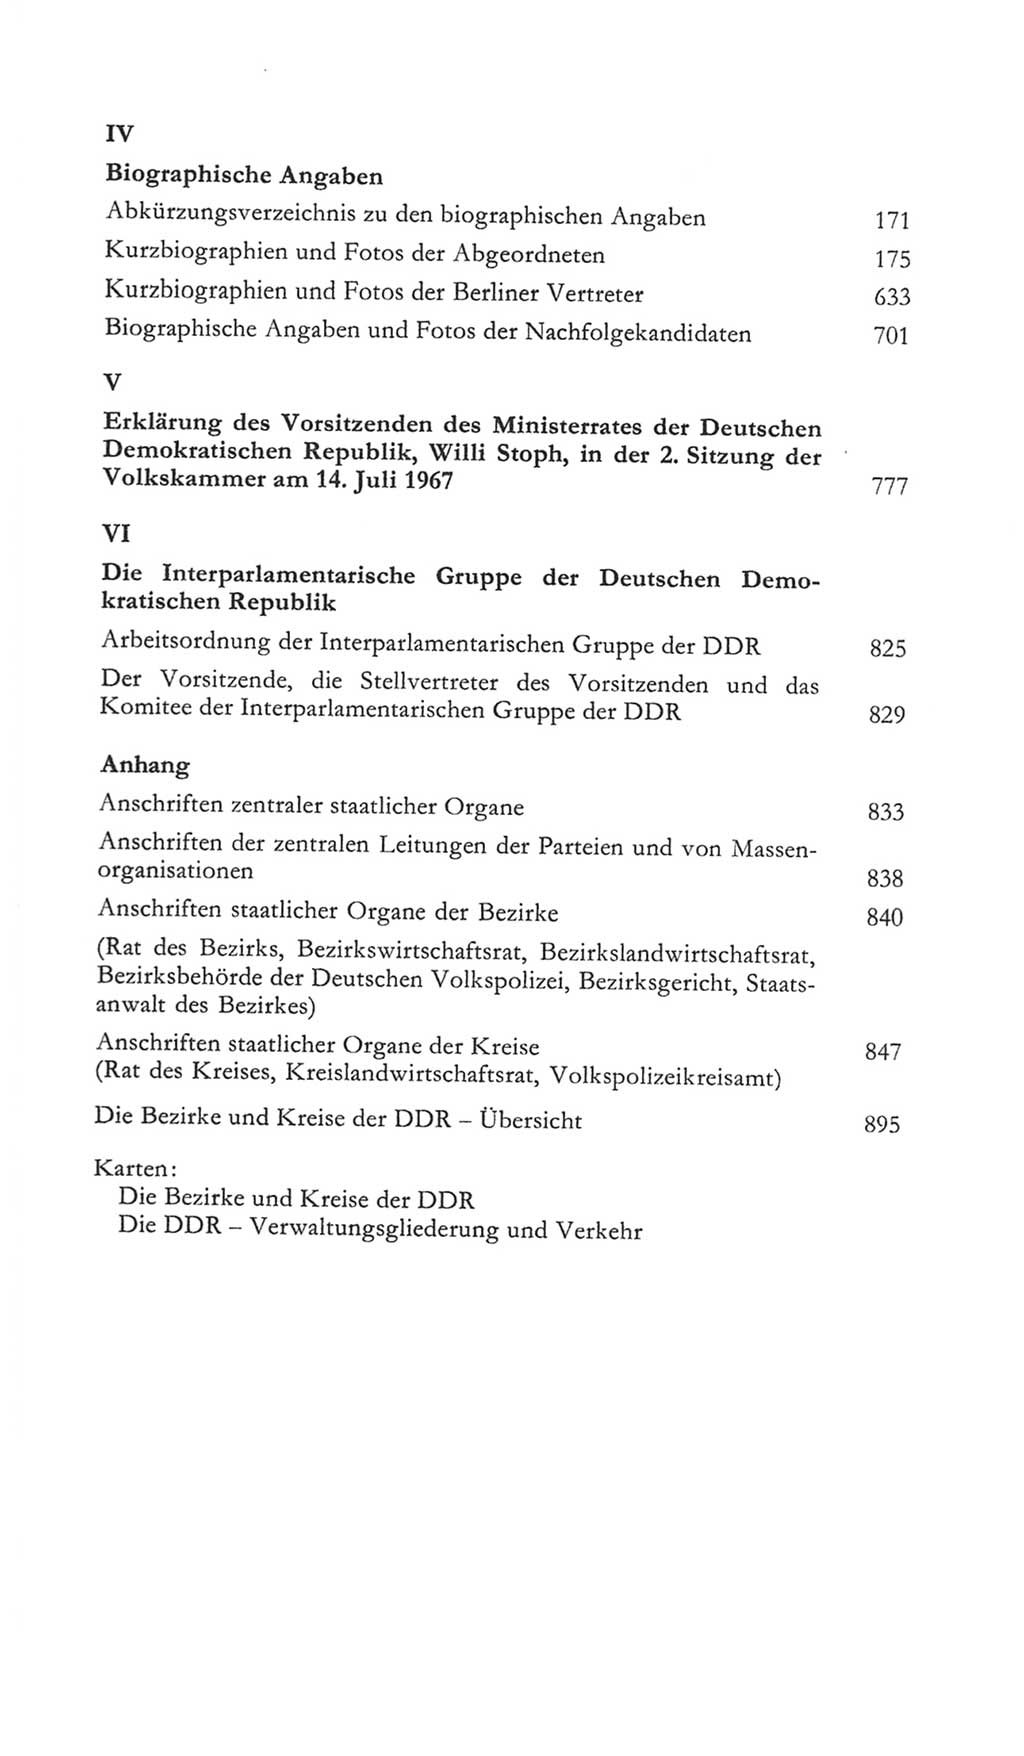 Volkskammer (VK) der Deutschen Demokratischen Republik (DDR) 5. Wahlperiode 1967-1971, Seite 7 (VK. DDR 5. WP. 1967-1971, S. 7)